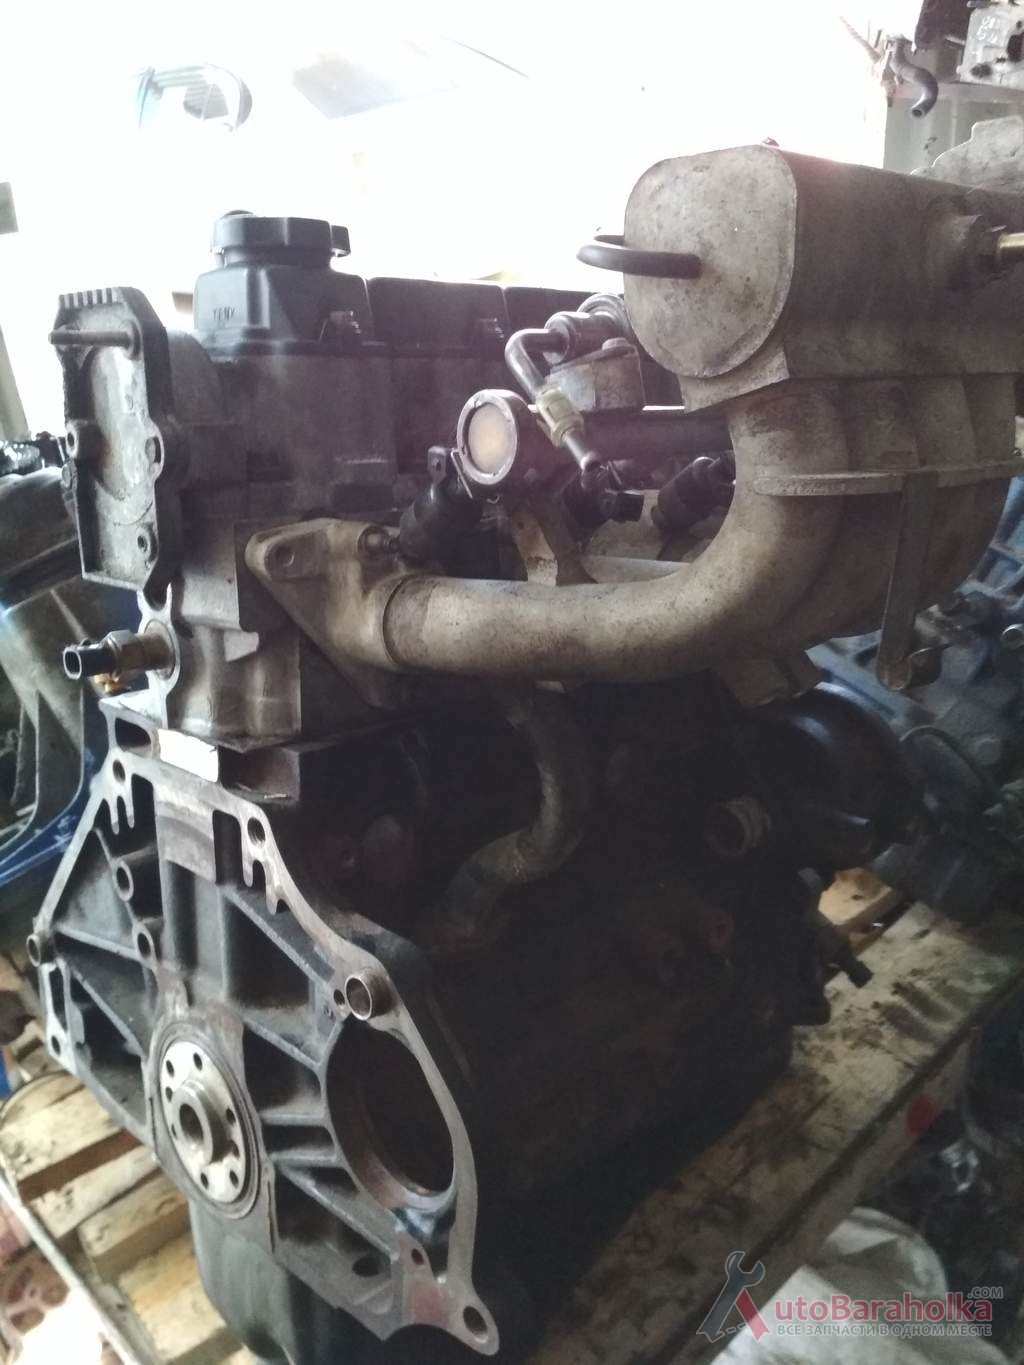 Продам Двигатель Daewoo Lanos Ланос 1.5 8кл из Польши. малый пробег. отличное состояние. Гарантия 3 месяца Харьков 